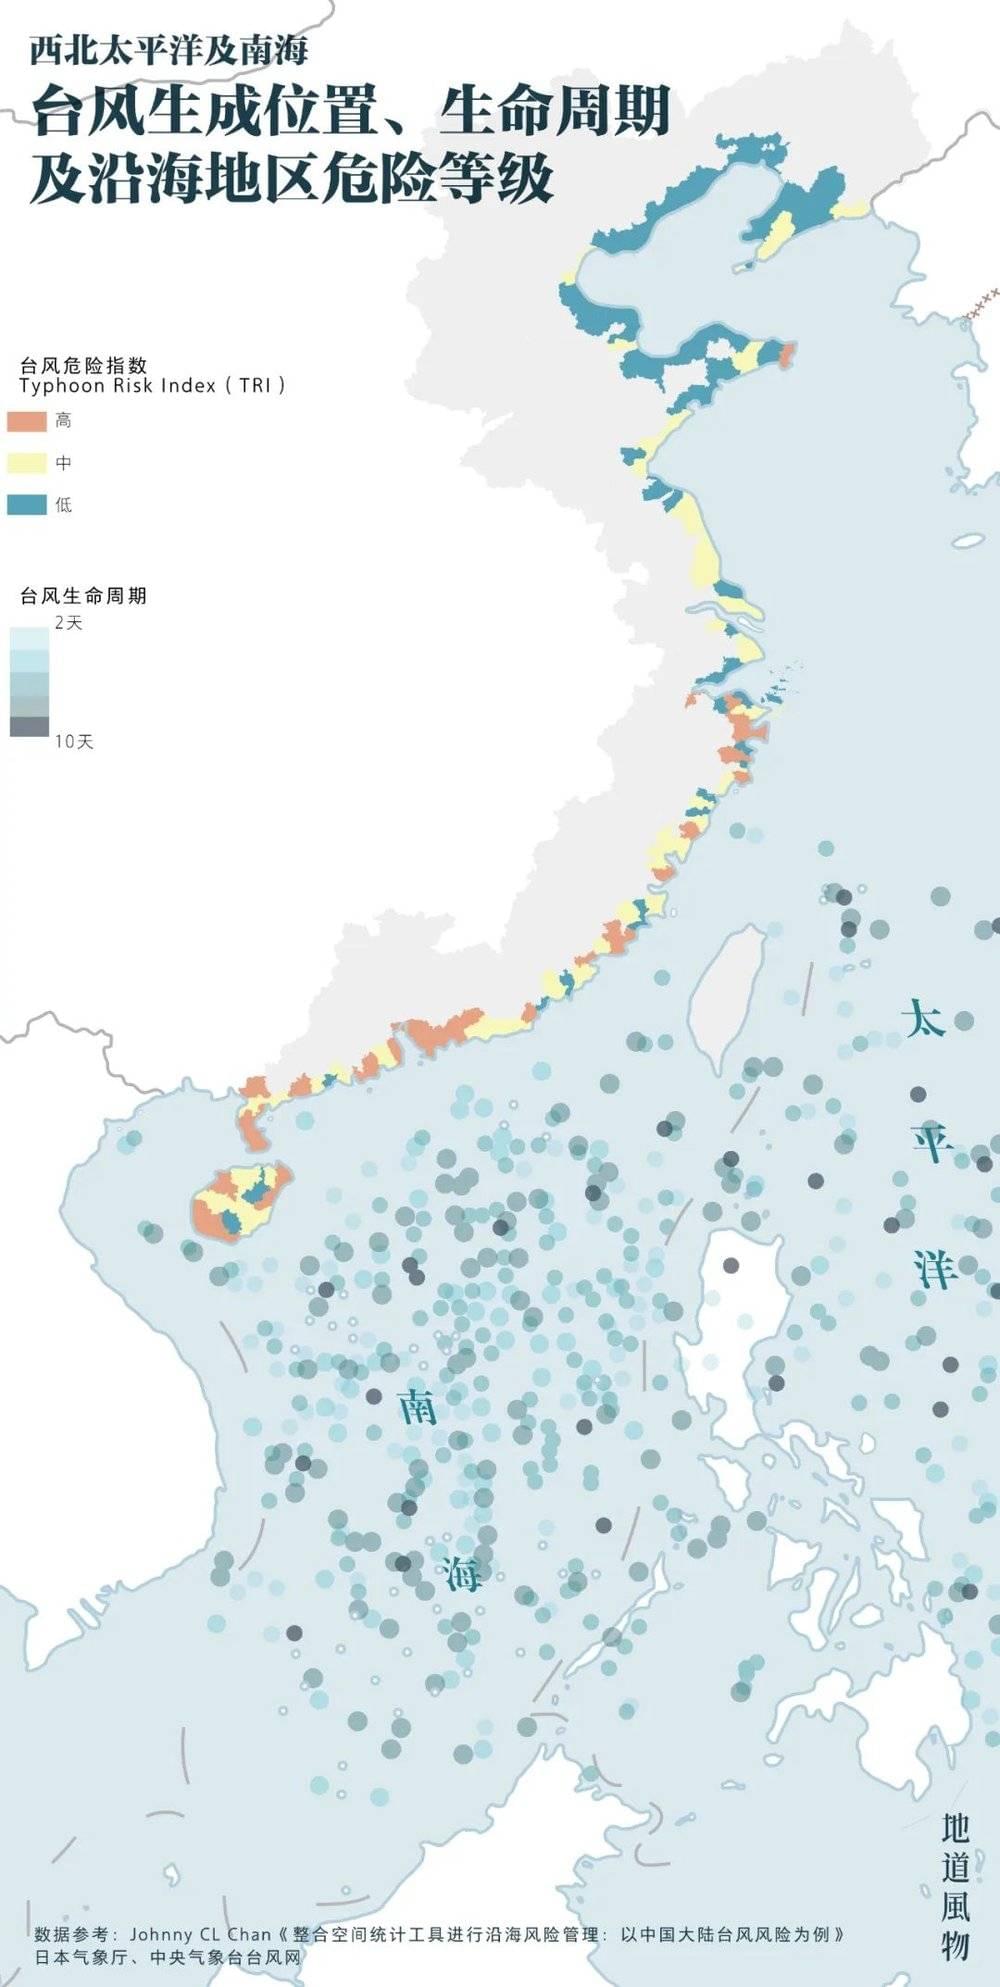 ▲ 台风生成位置、生命周期及沿海地区危险等级。地图上的灰色部分为受影响的地区，台湾省暂无详细数据。制图/Paprika